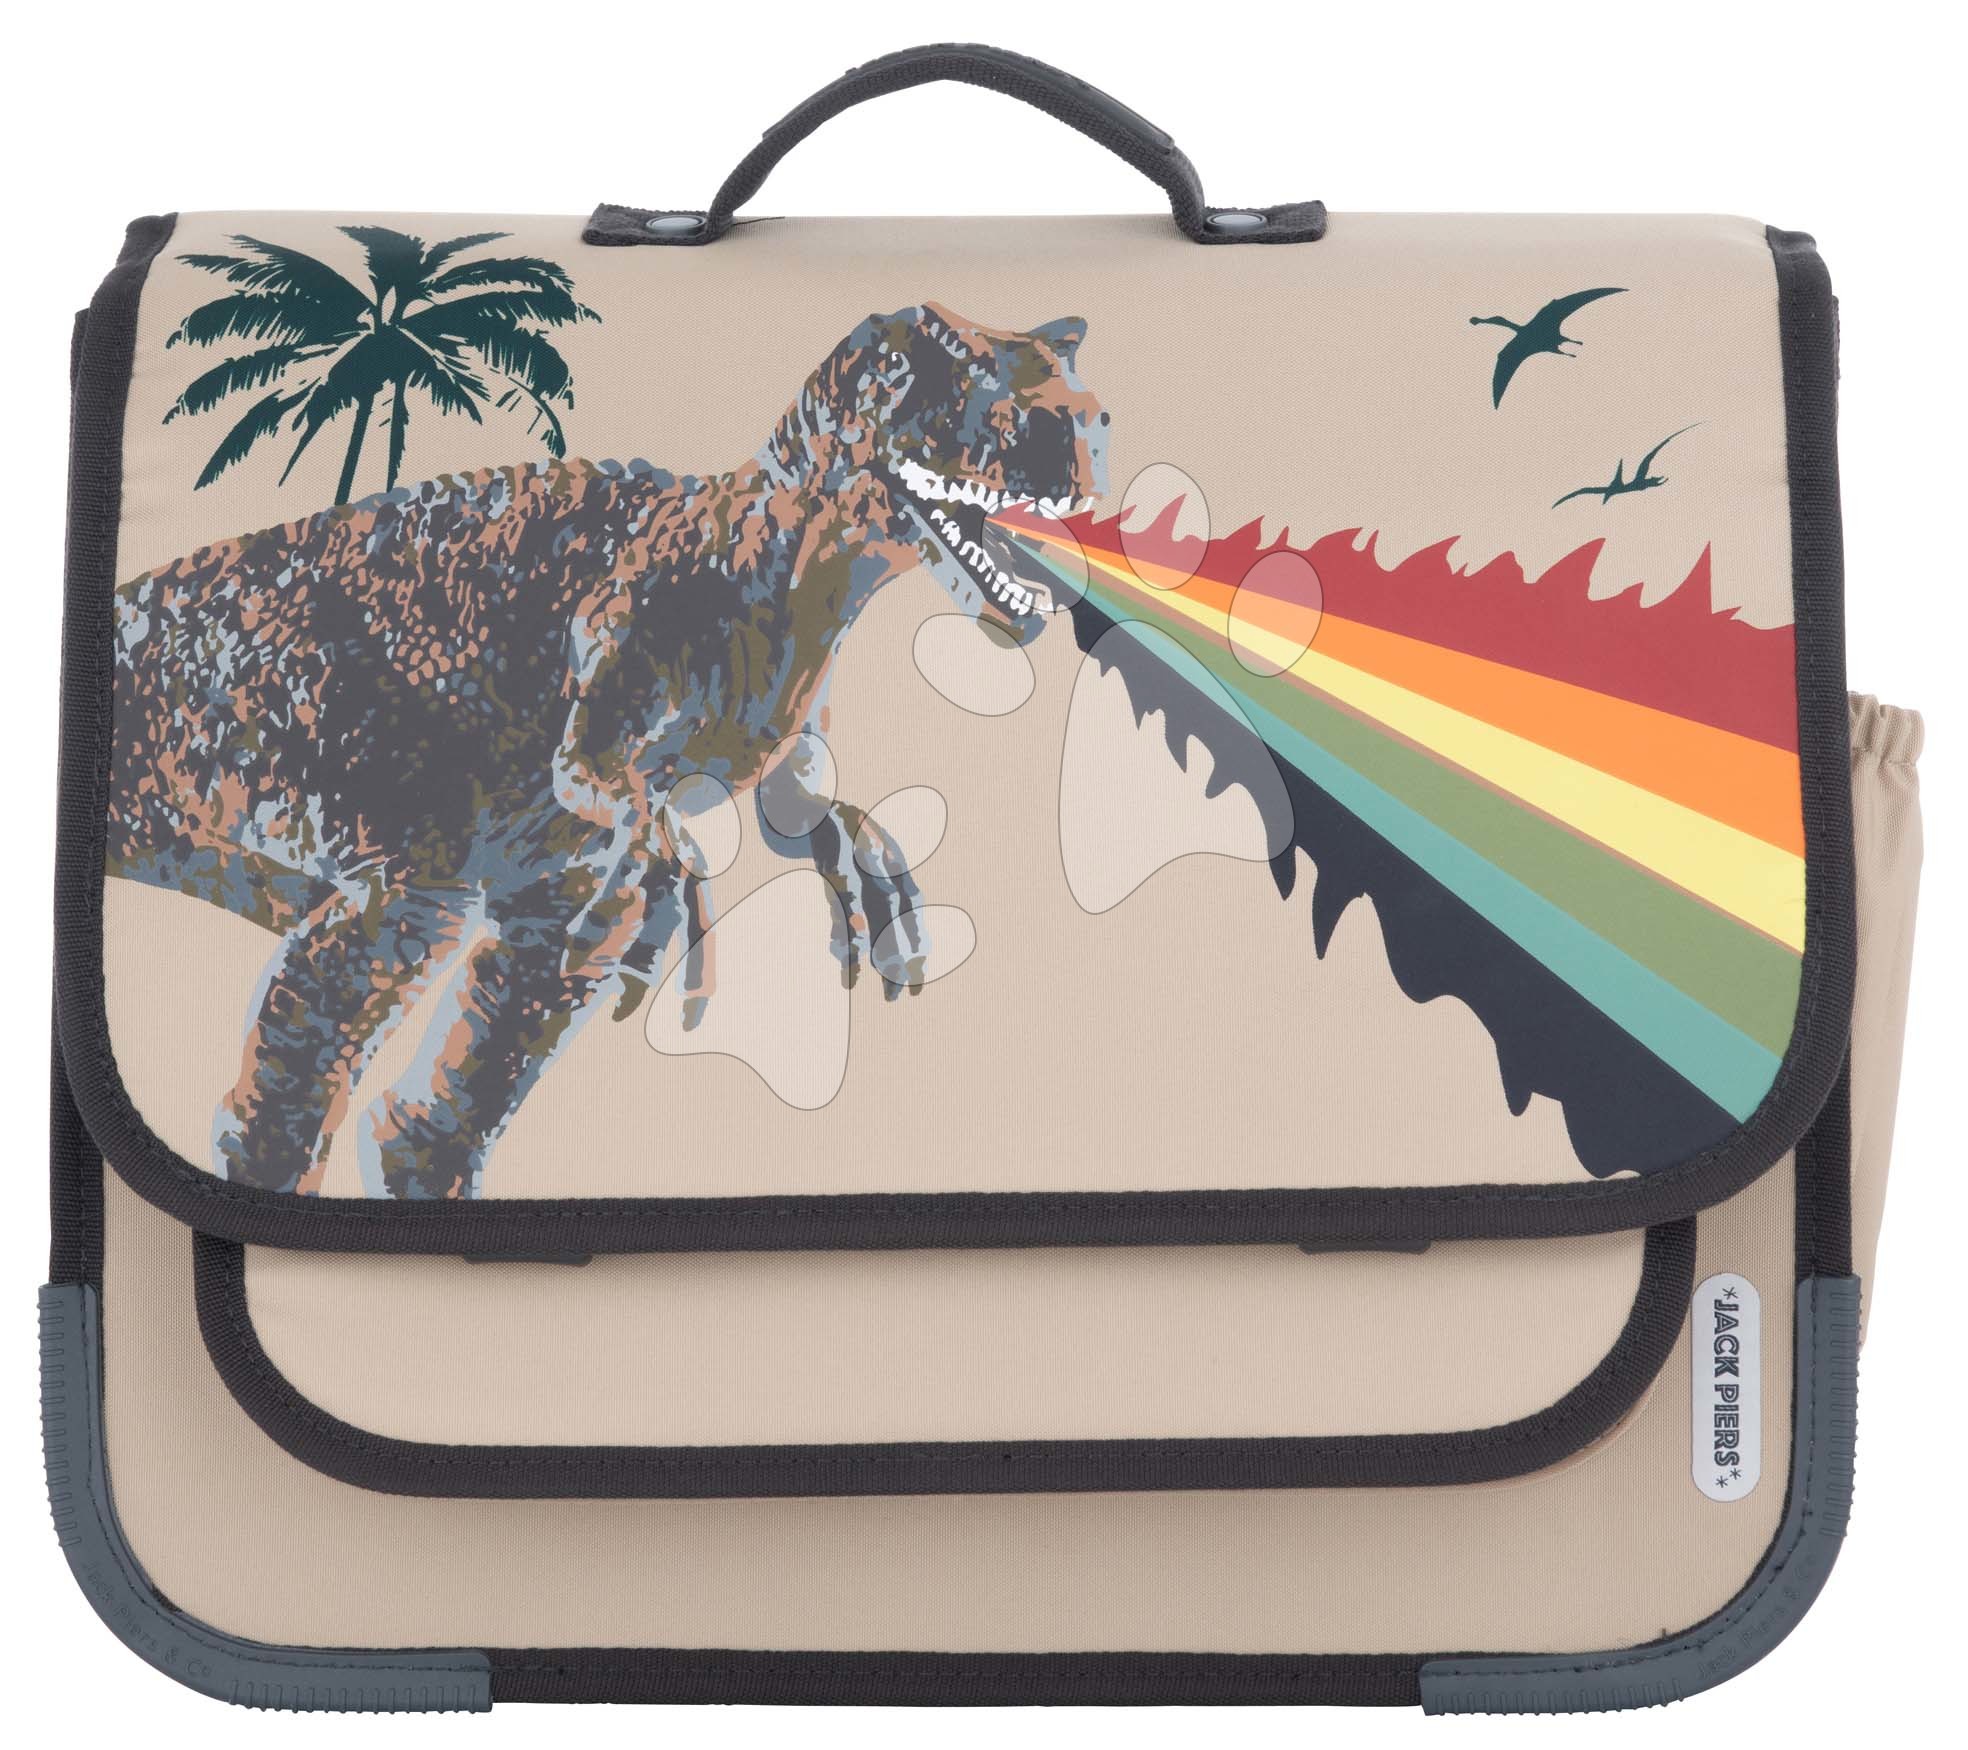 Školská aktovka Schoolbag Paris Large Dinosaur Jack Piers ergonomická luxusné prevedenie od 6 rokov